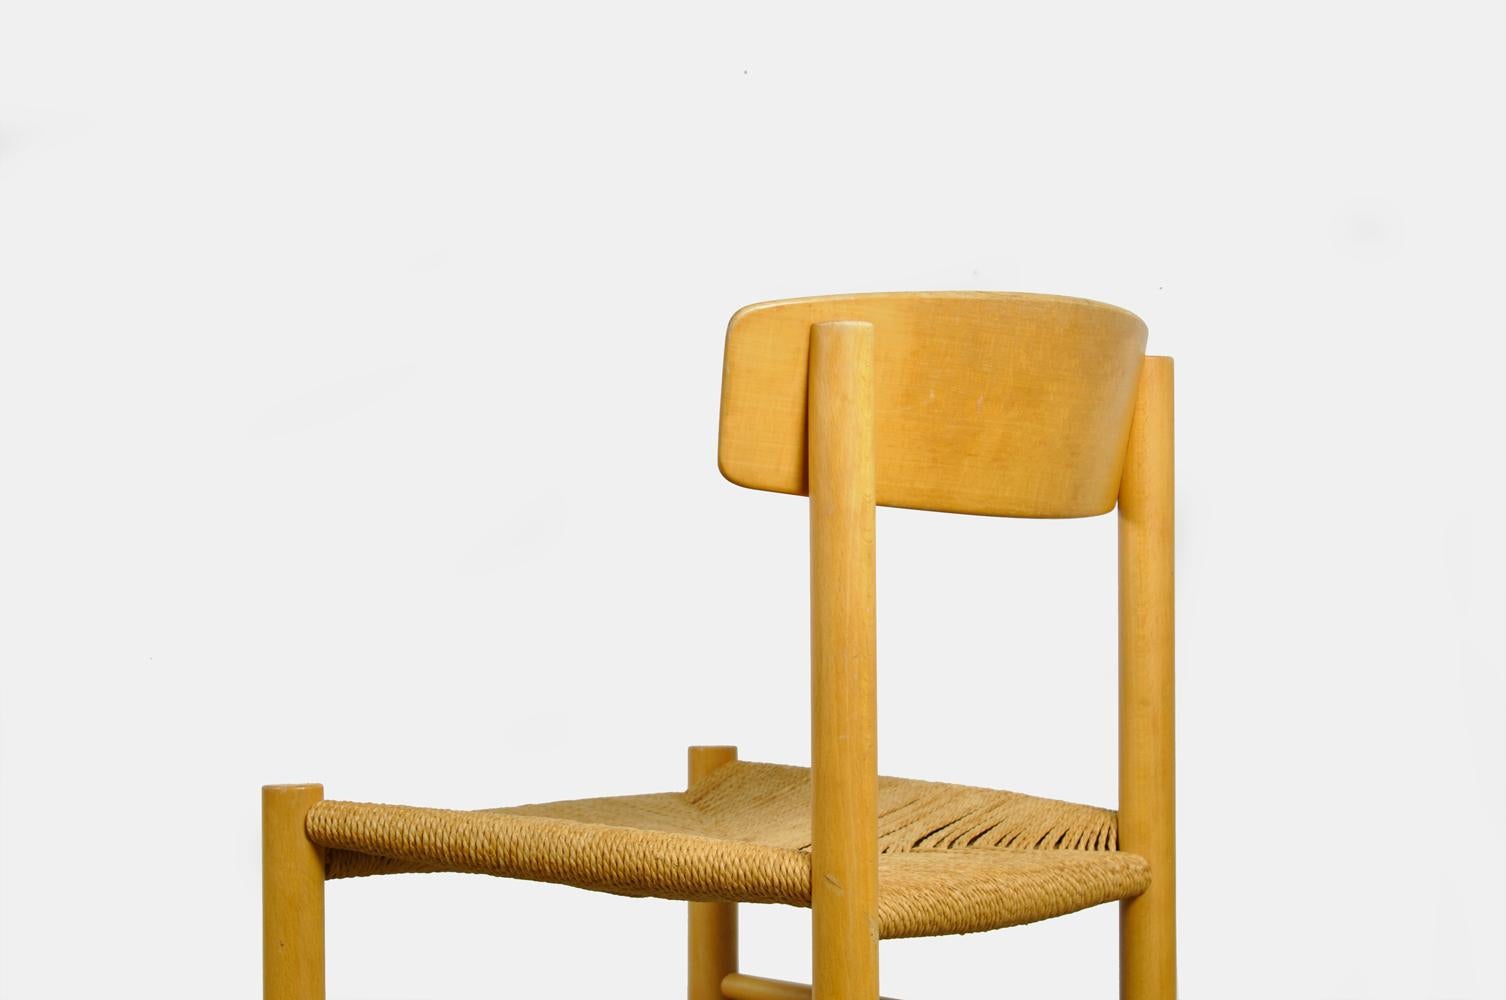 Woven Original Beech Dining Chairs, J39, by Børge Mogensen for F.D.B. Mobler, Denmark